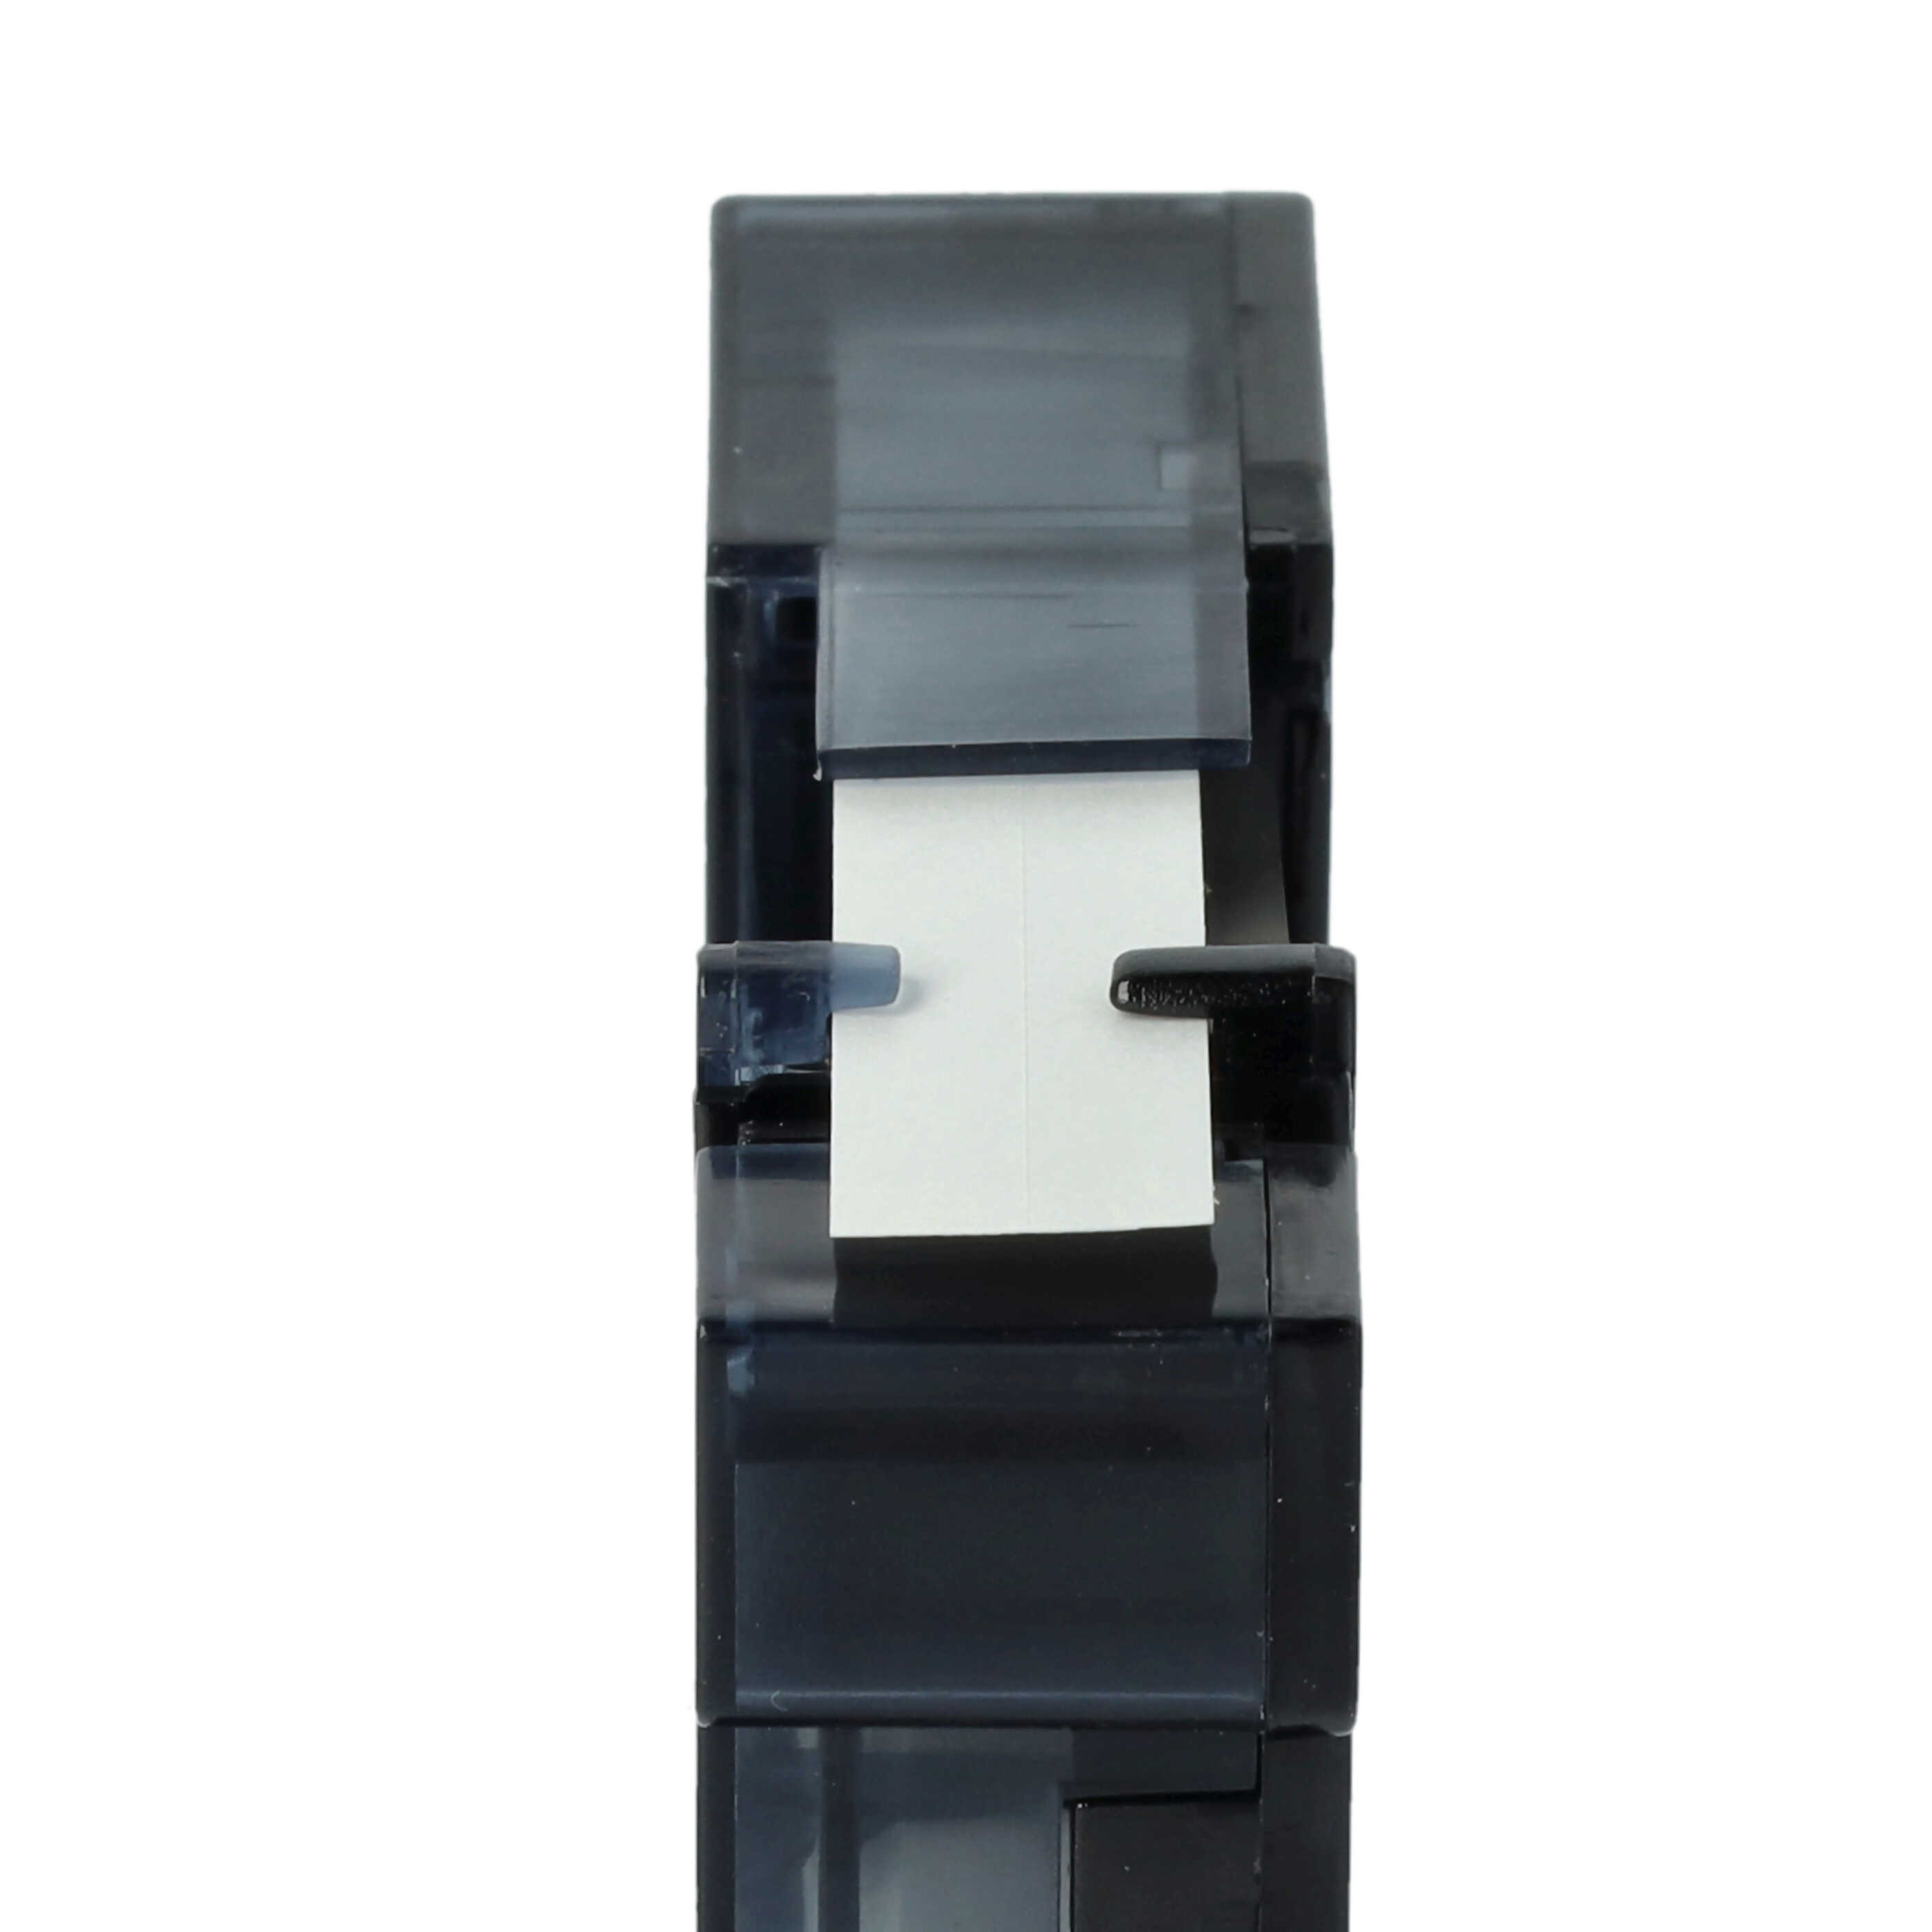 10x Casete cinta escritura reemplaza Dymo S0720680, 40913, D1 Negro su Blanco